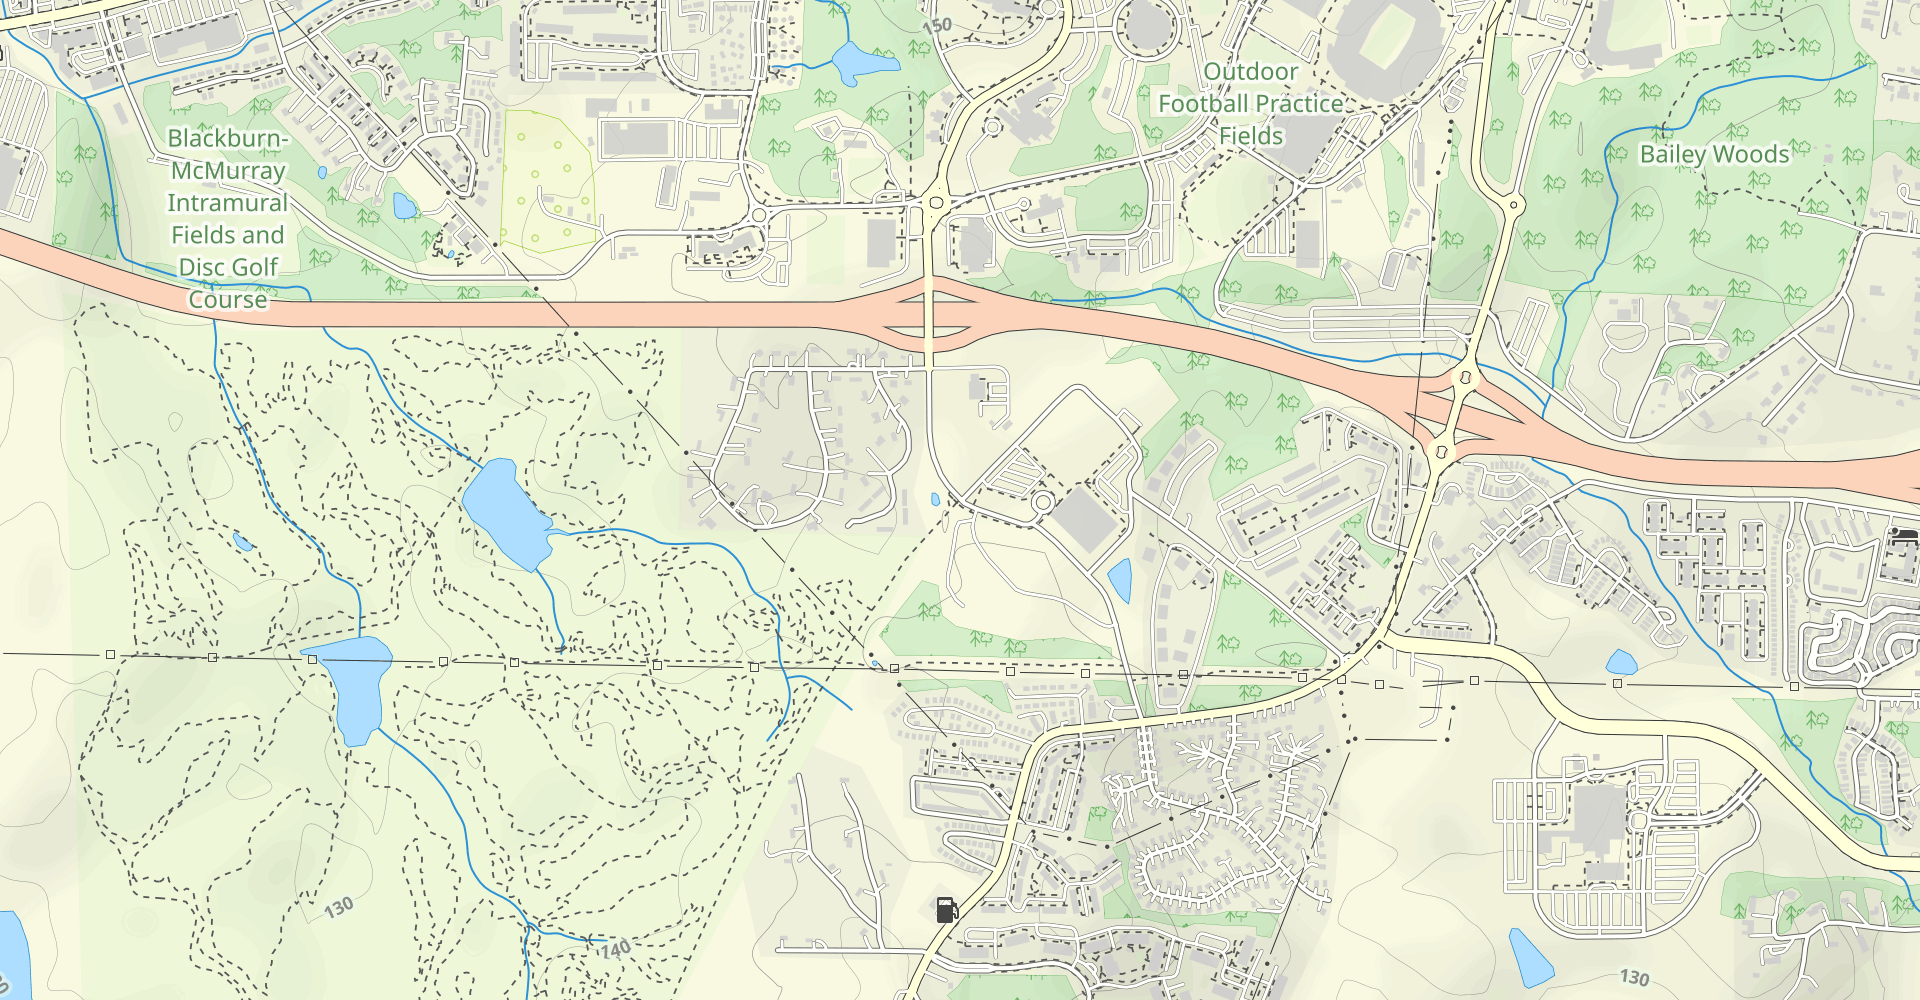 South Campus Rail Trail